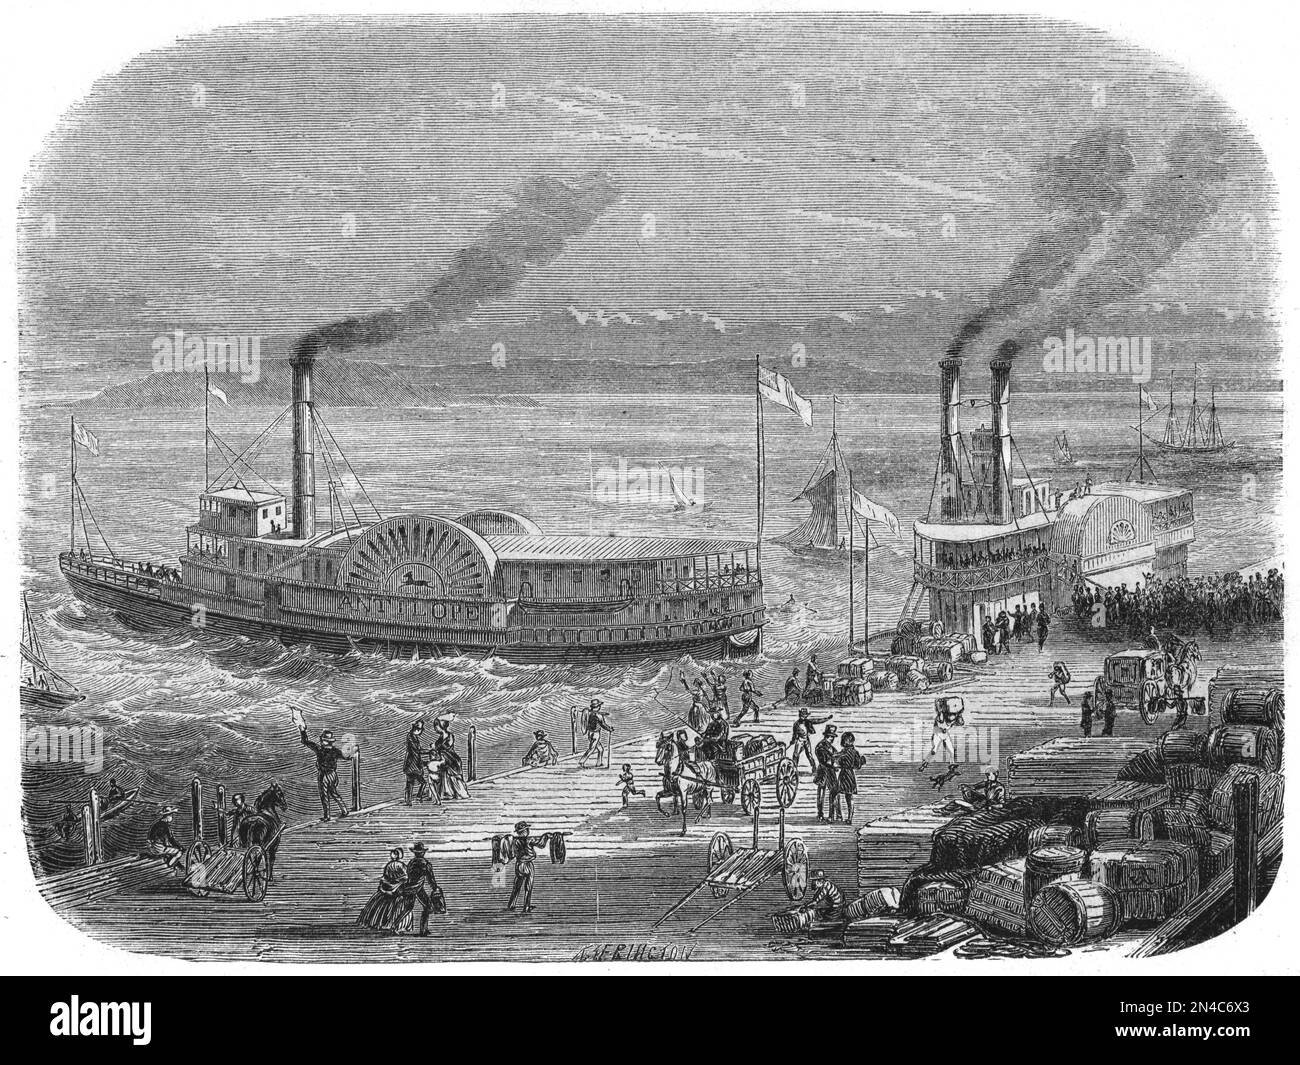 Paddle Steamers sur le quai ou le Quayside de San Francisco California US ou USA. Gravure ancienne de l'illustration 1862 Banque D'Images